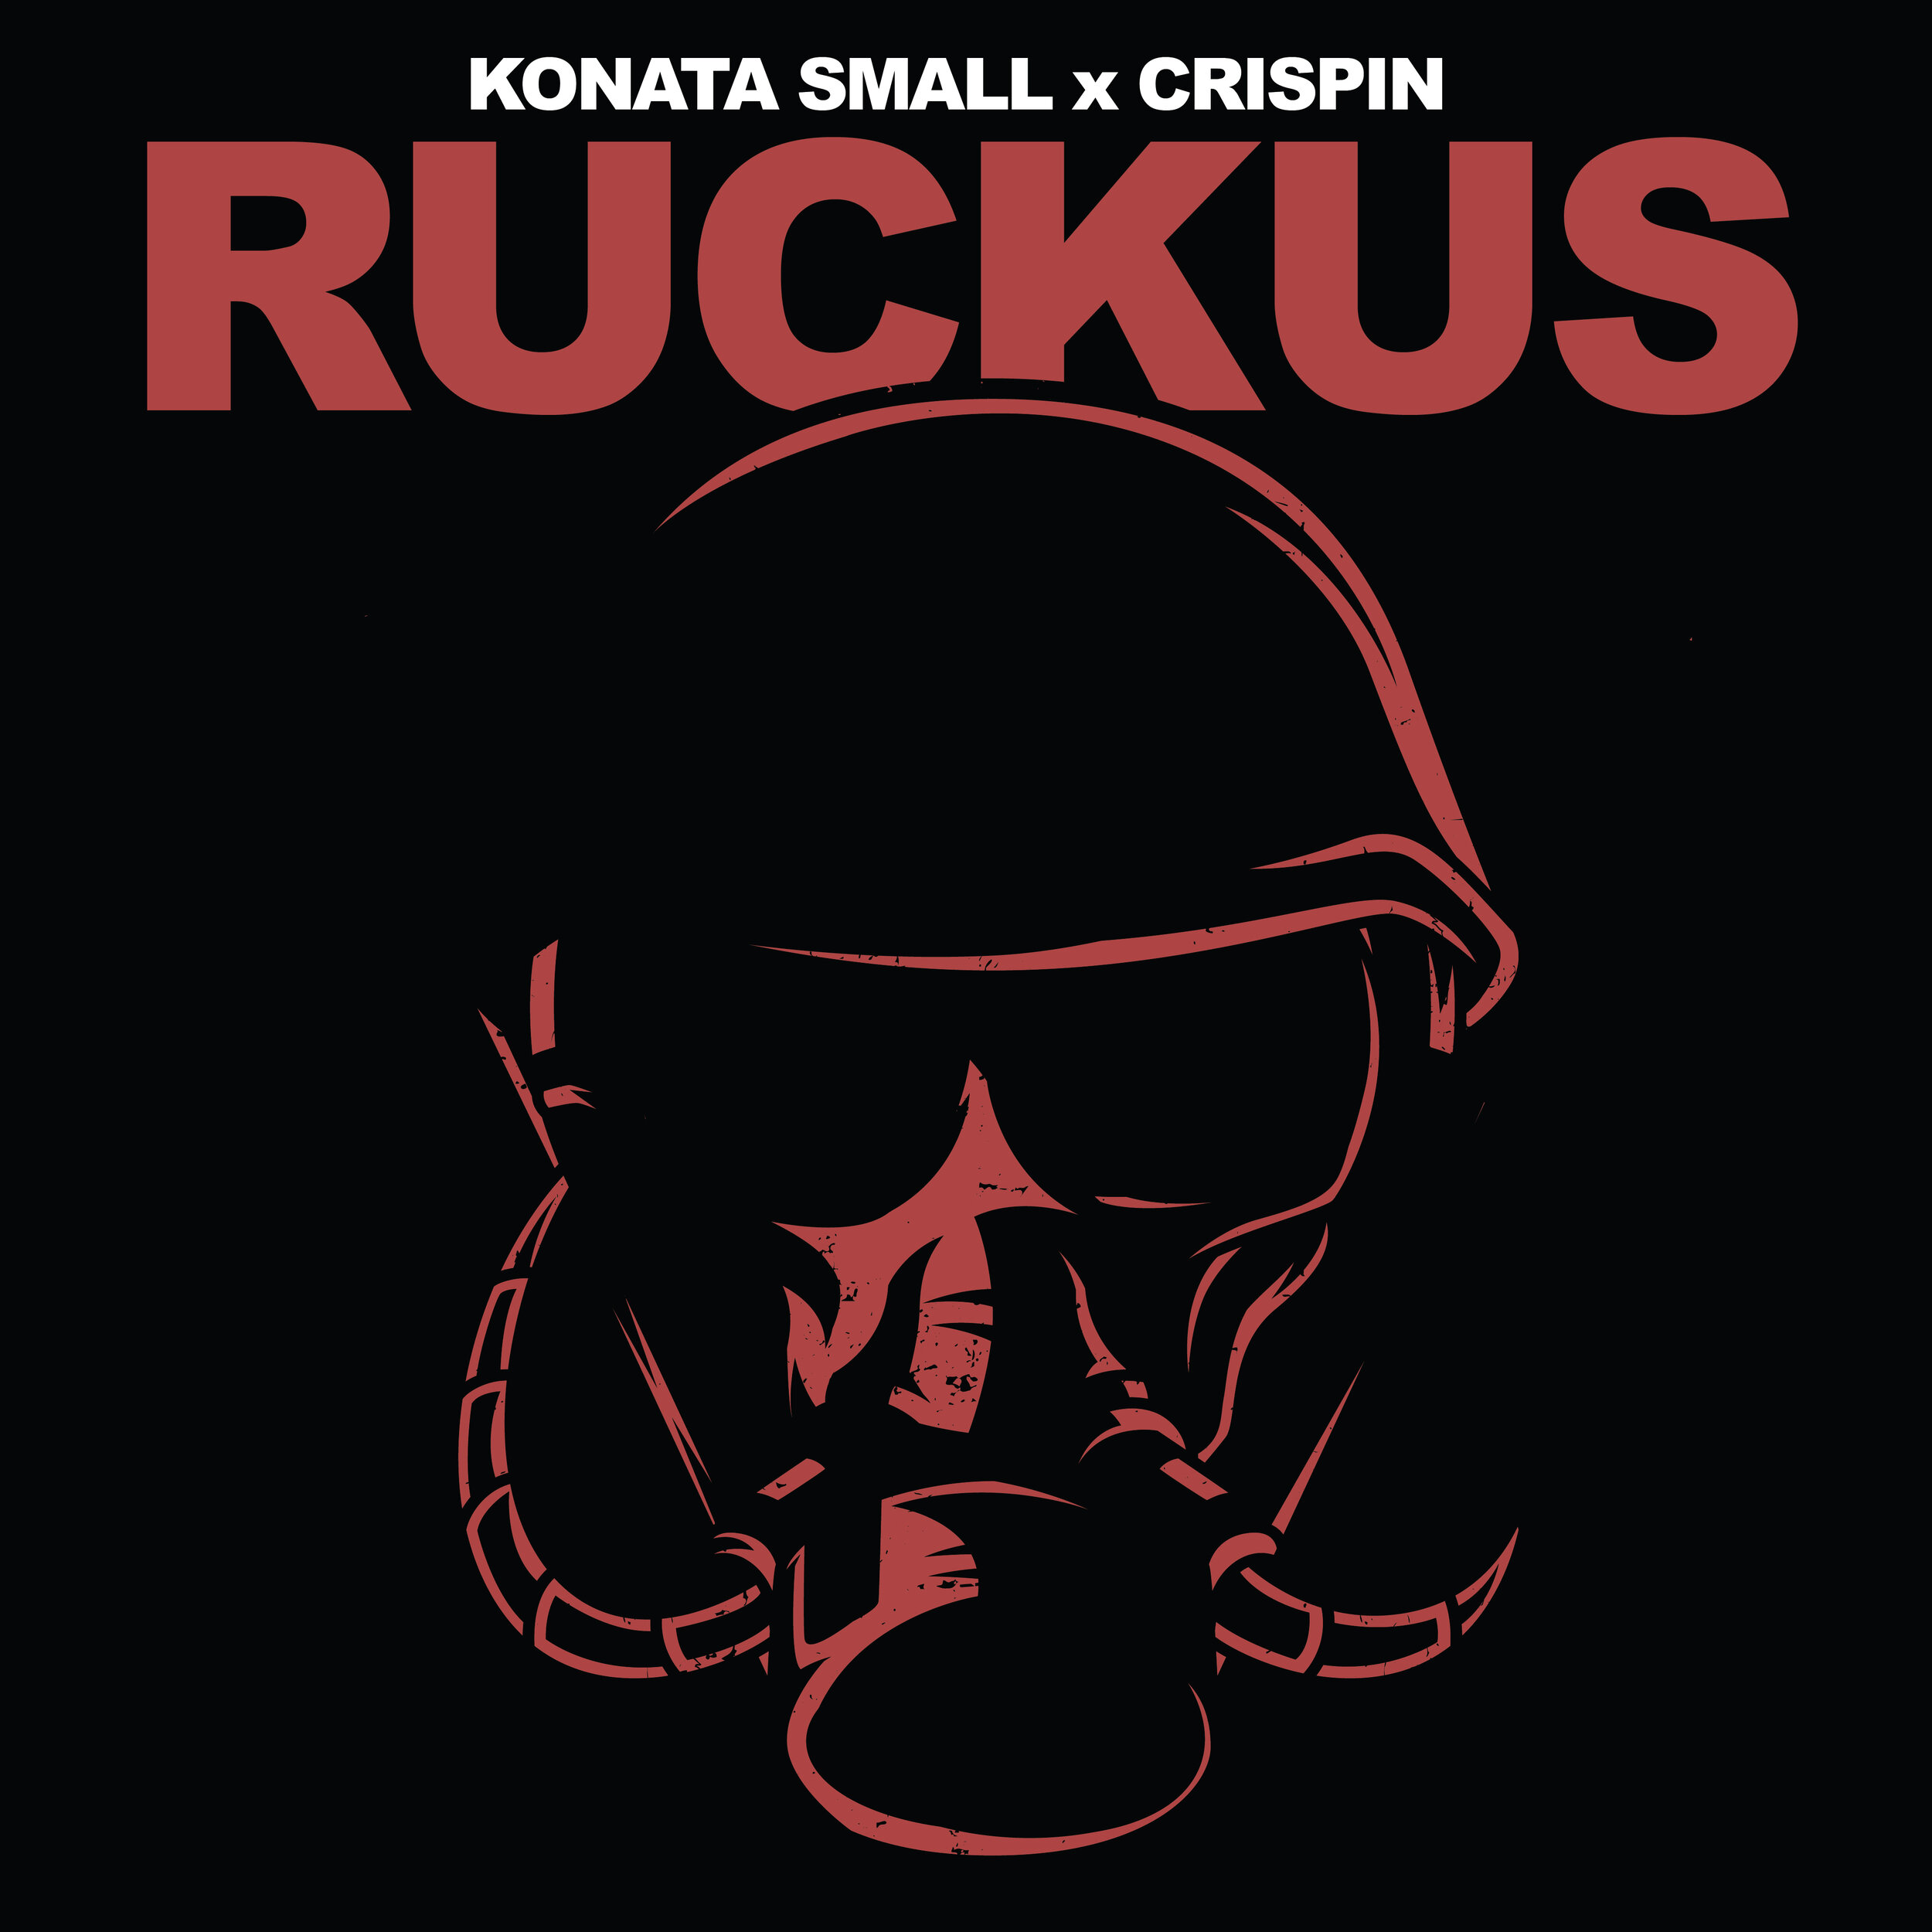 Konata Small x Crispin Ruckus